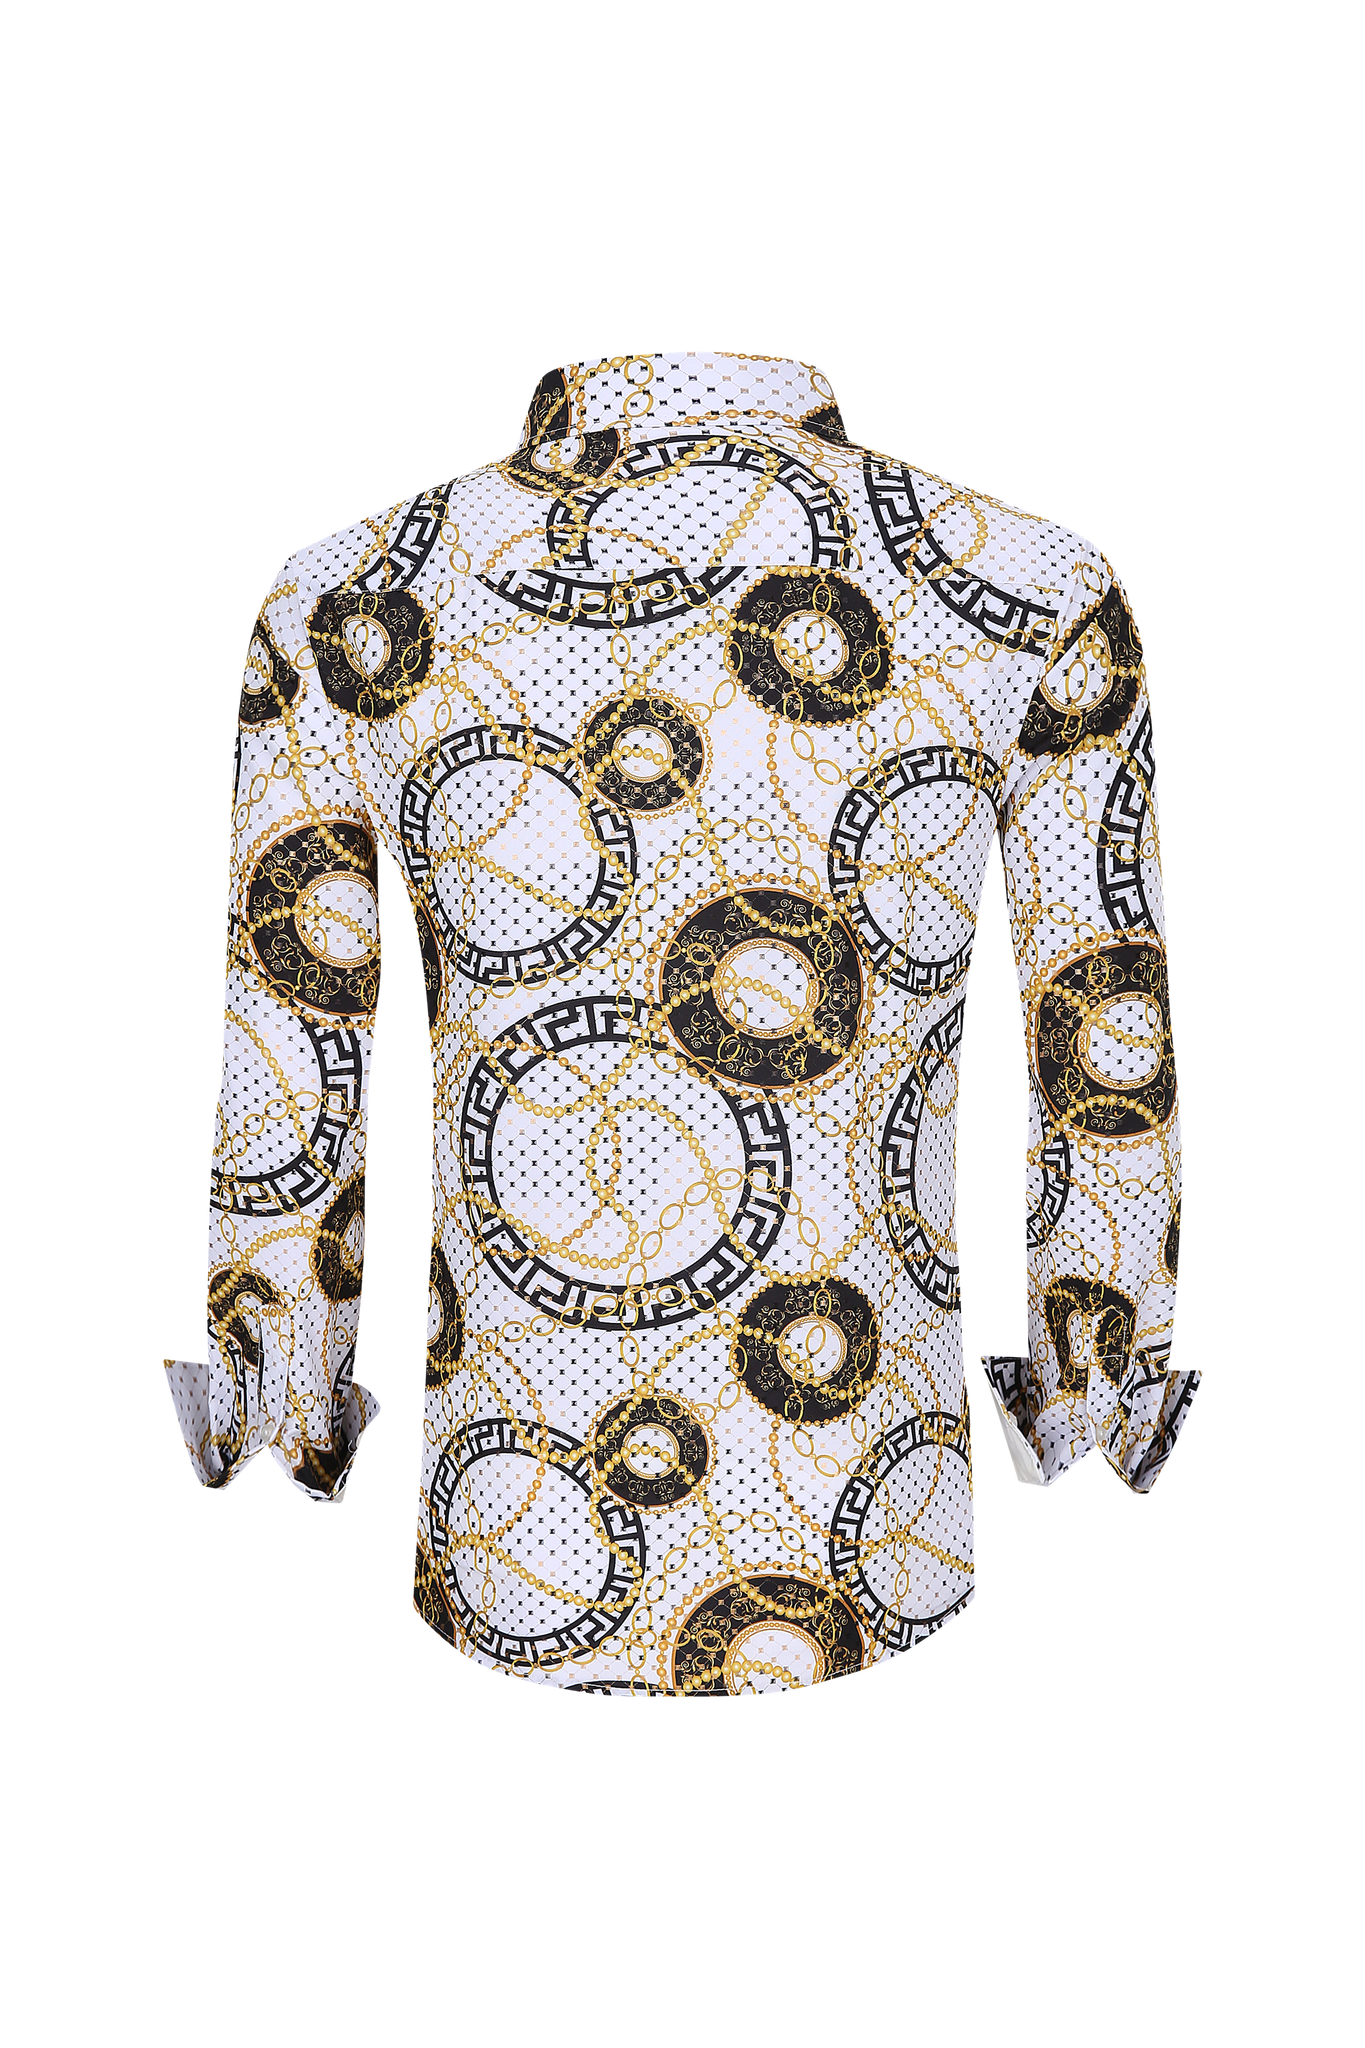 Mens Luxury Brand Printed Silk Like Shirts-HLS2002L-513